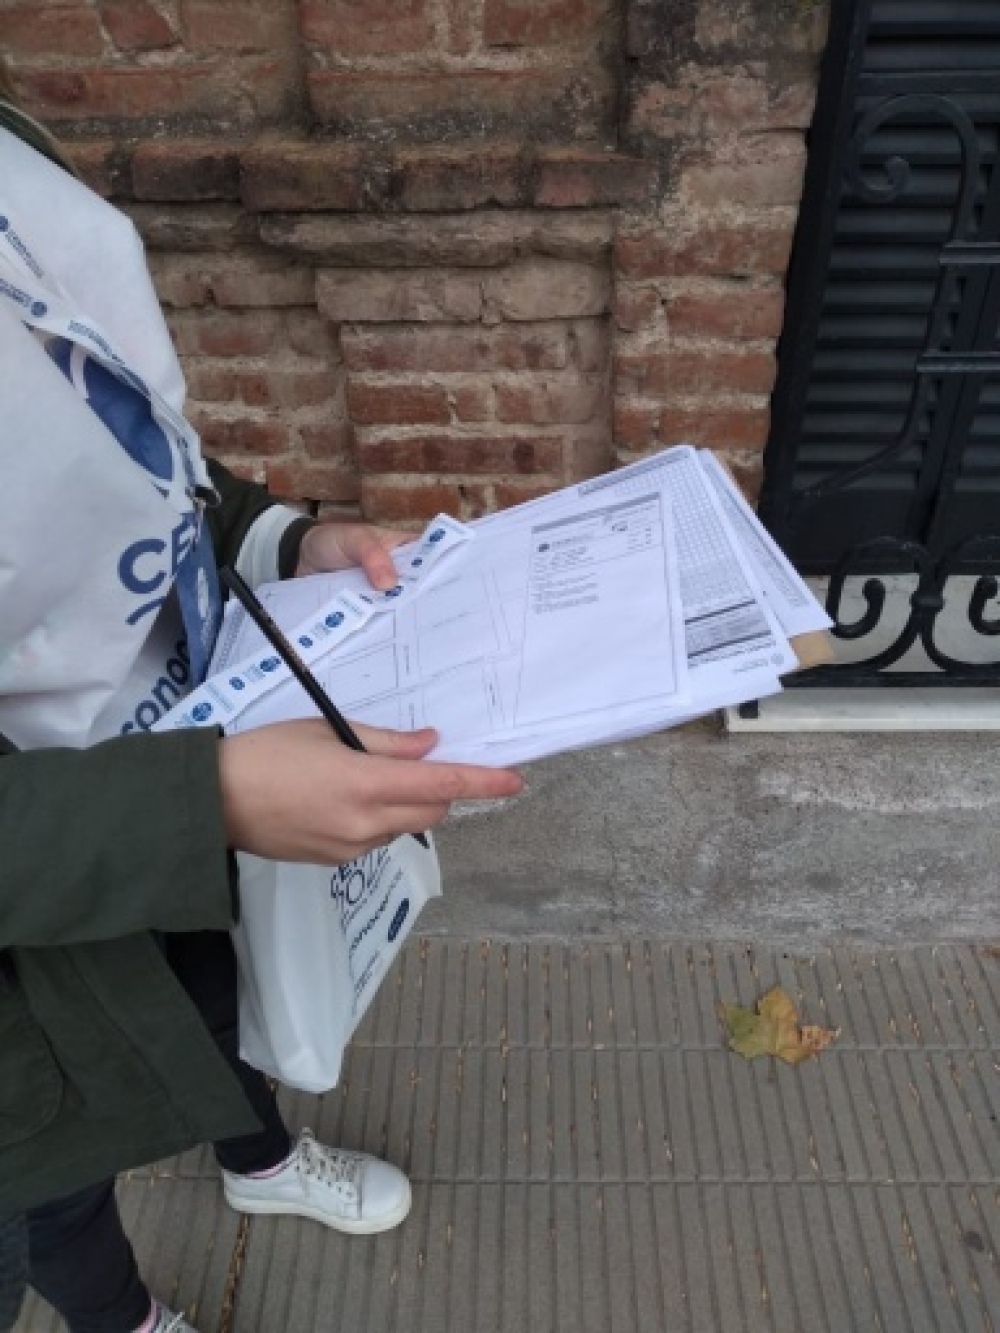 A las 23.30 horas finalizó el Censo para la ciudad de Coronel Suárez: hay 6 días para volver a relevar viviendas sin censar
